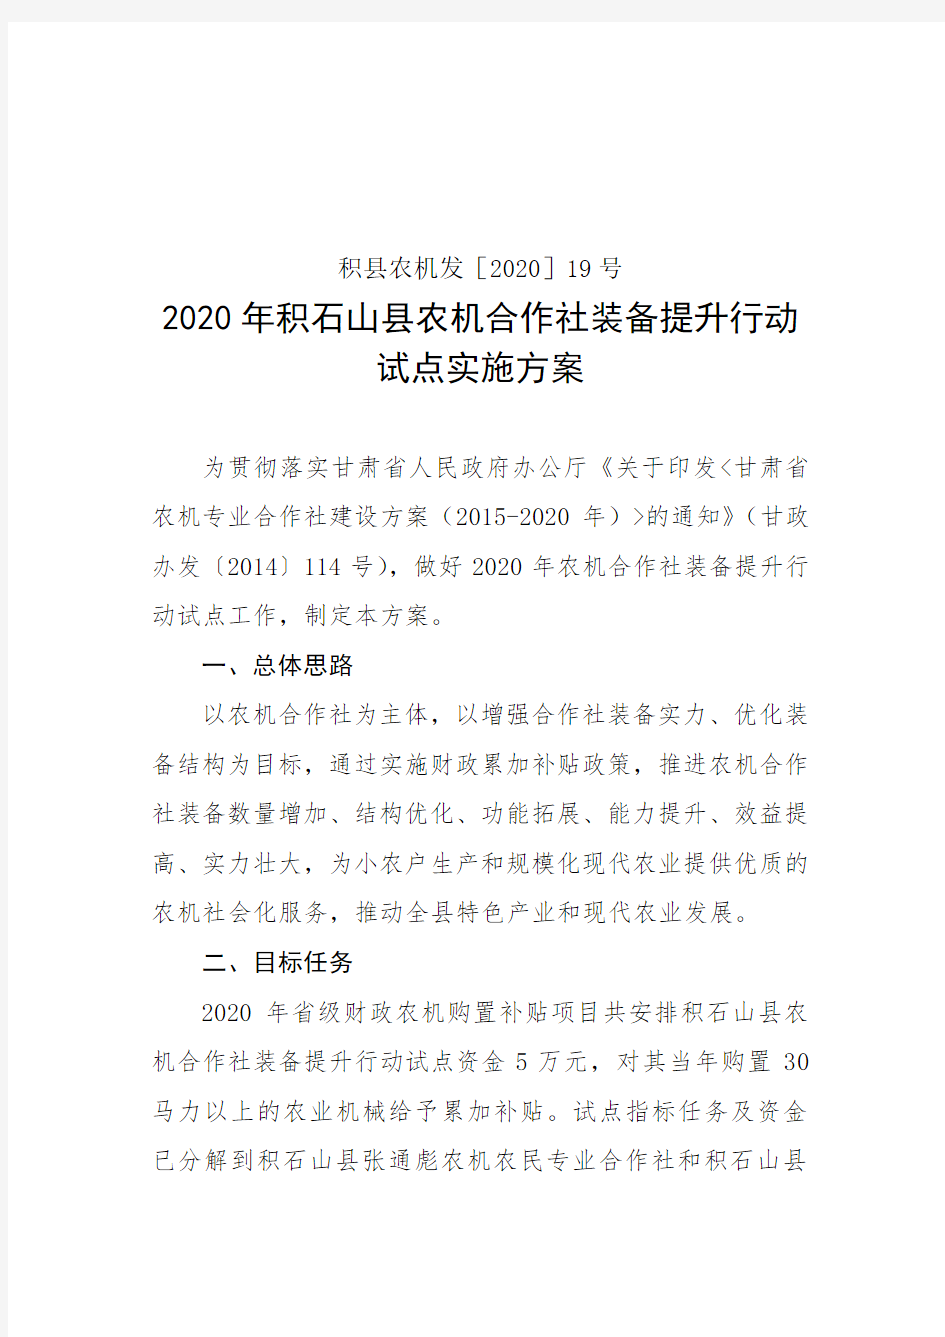 2020年积石山县农机合作社装备提升行动试点实施方案【模板】